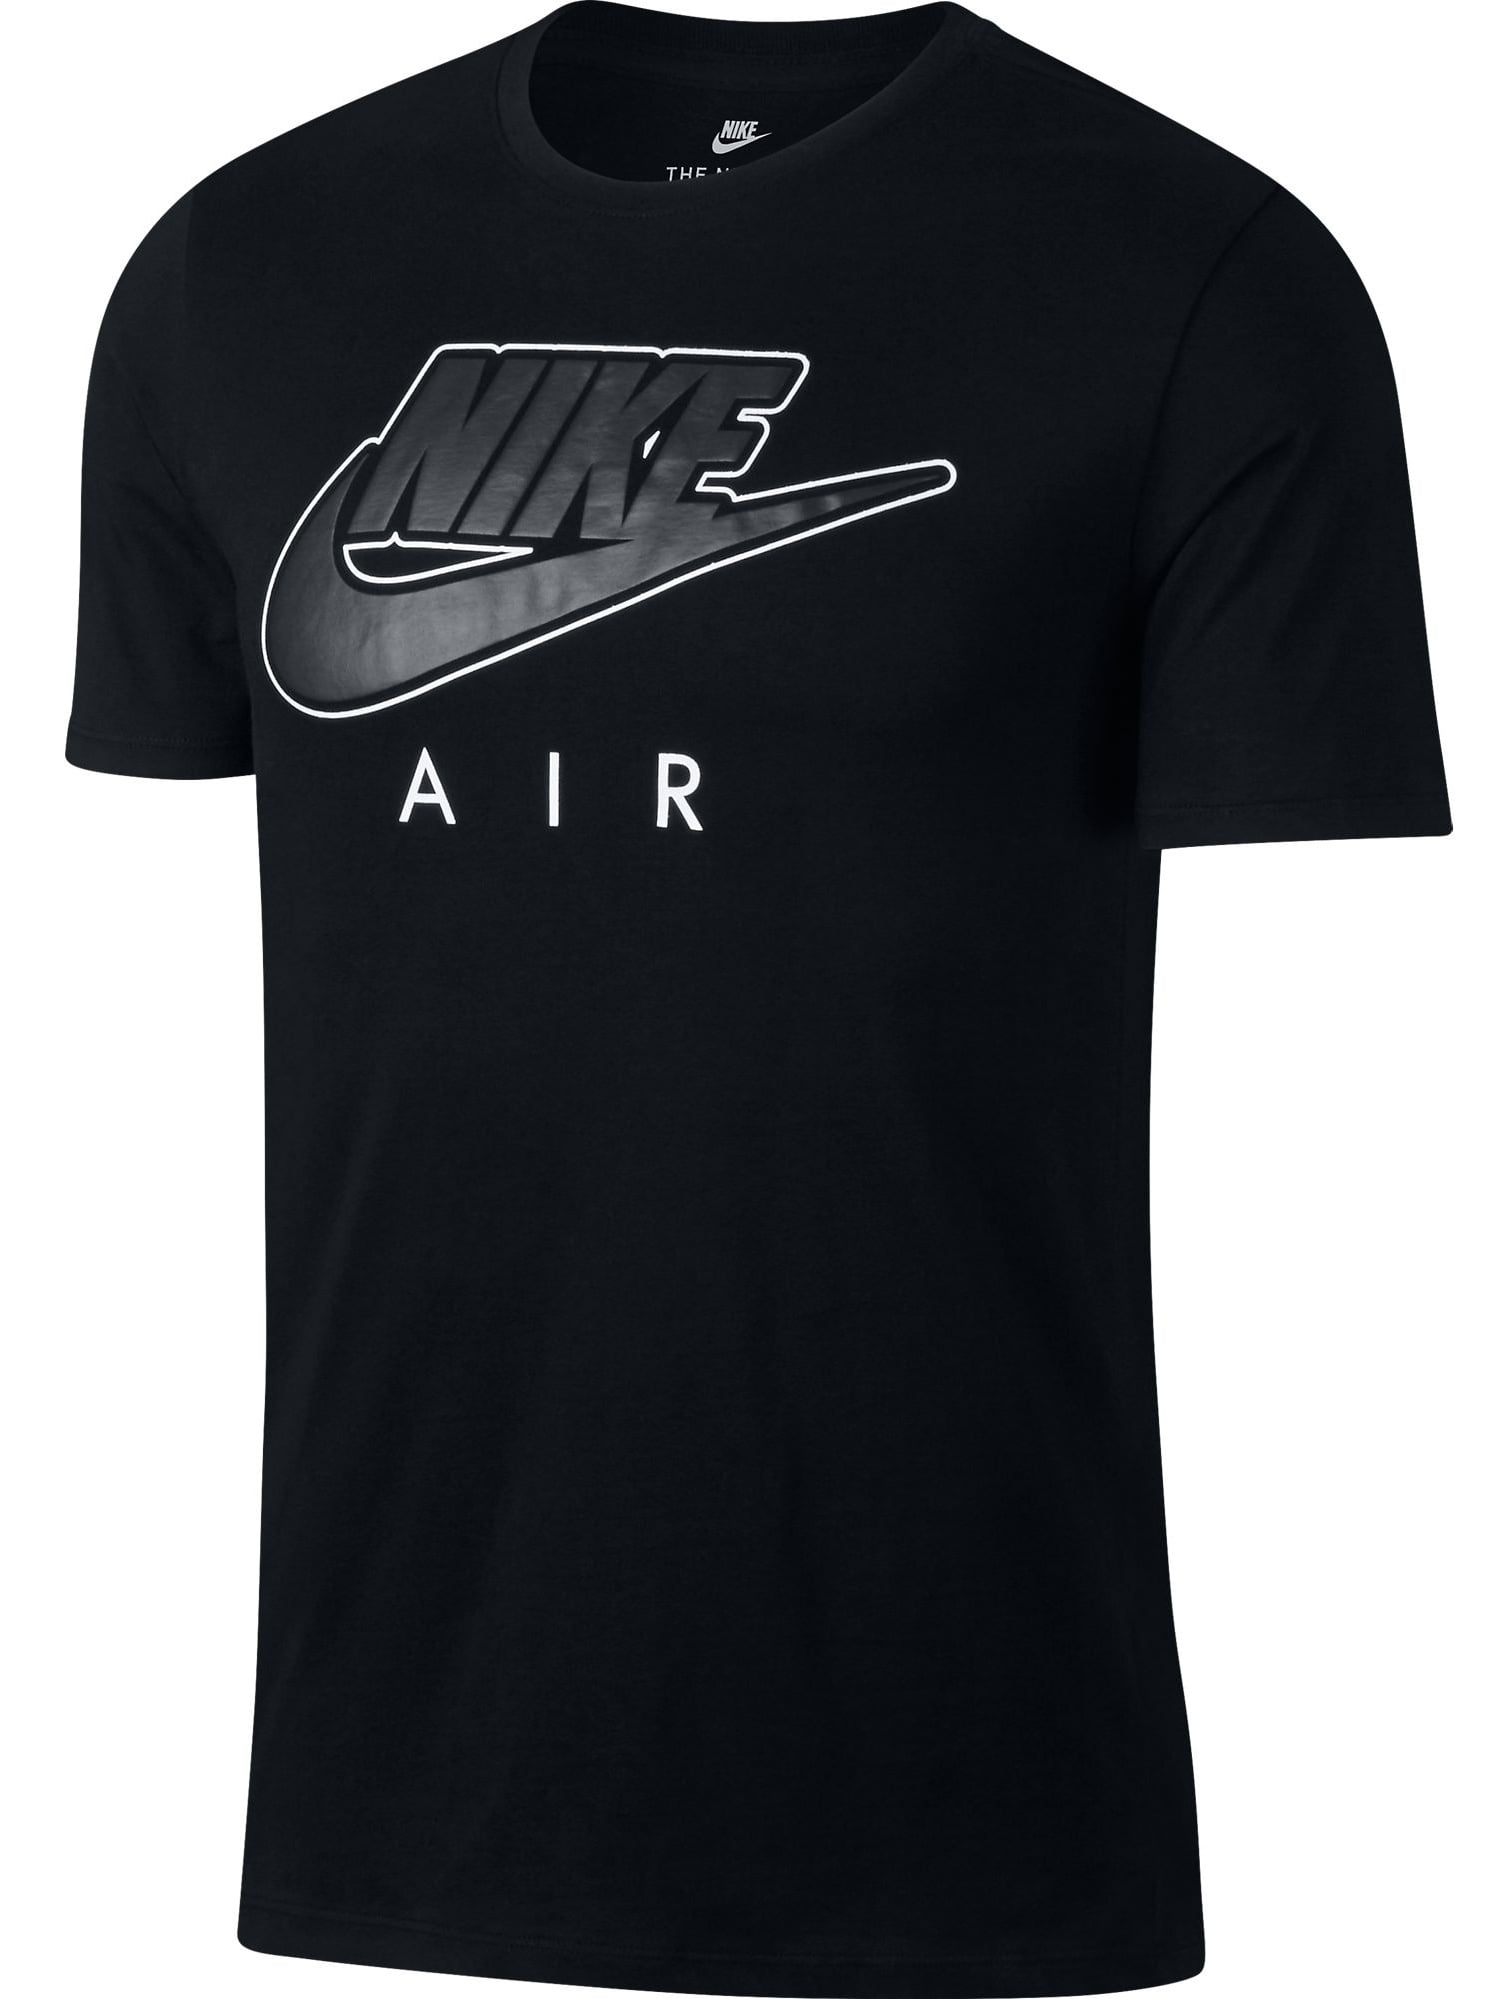 Nike Air More Uptempo Men's Shortsleeve T-Shirt Black/White 906964-010 ...